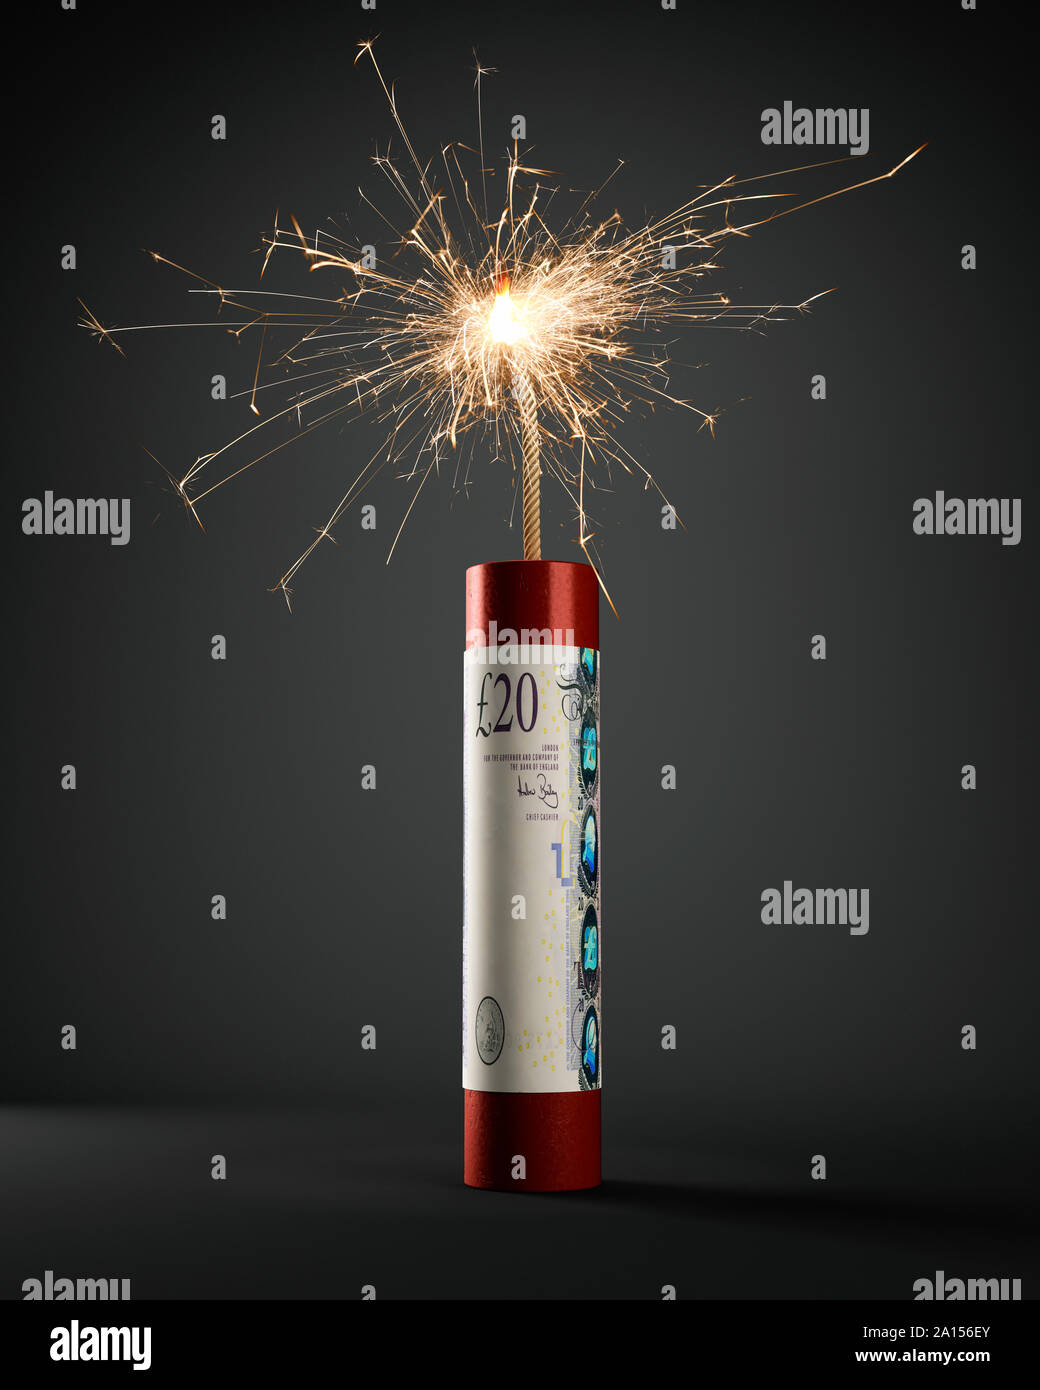 Cartucho de dinamita con nota de 20 libras esterlinas GBP, iluminadas y quemando Foto de stock